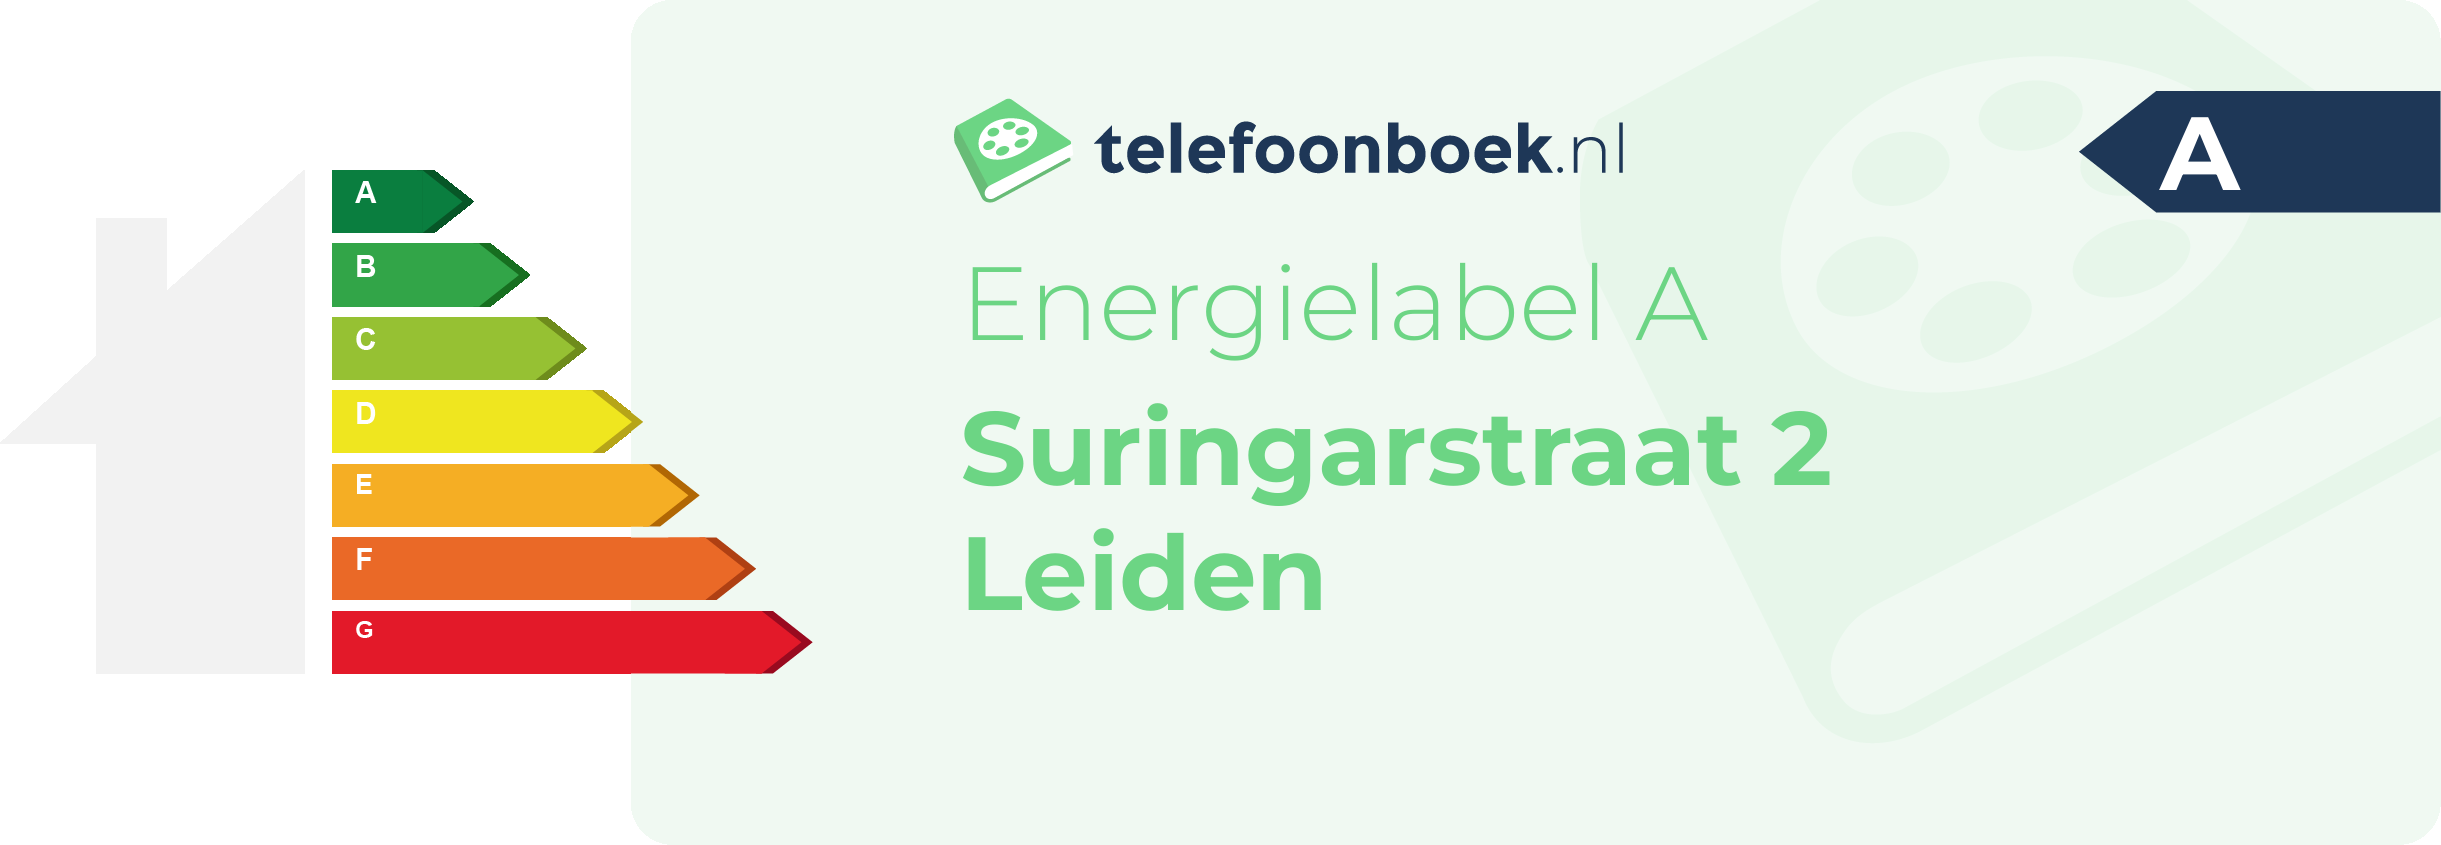 Energielabel Suringarstraat 2 Leiden